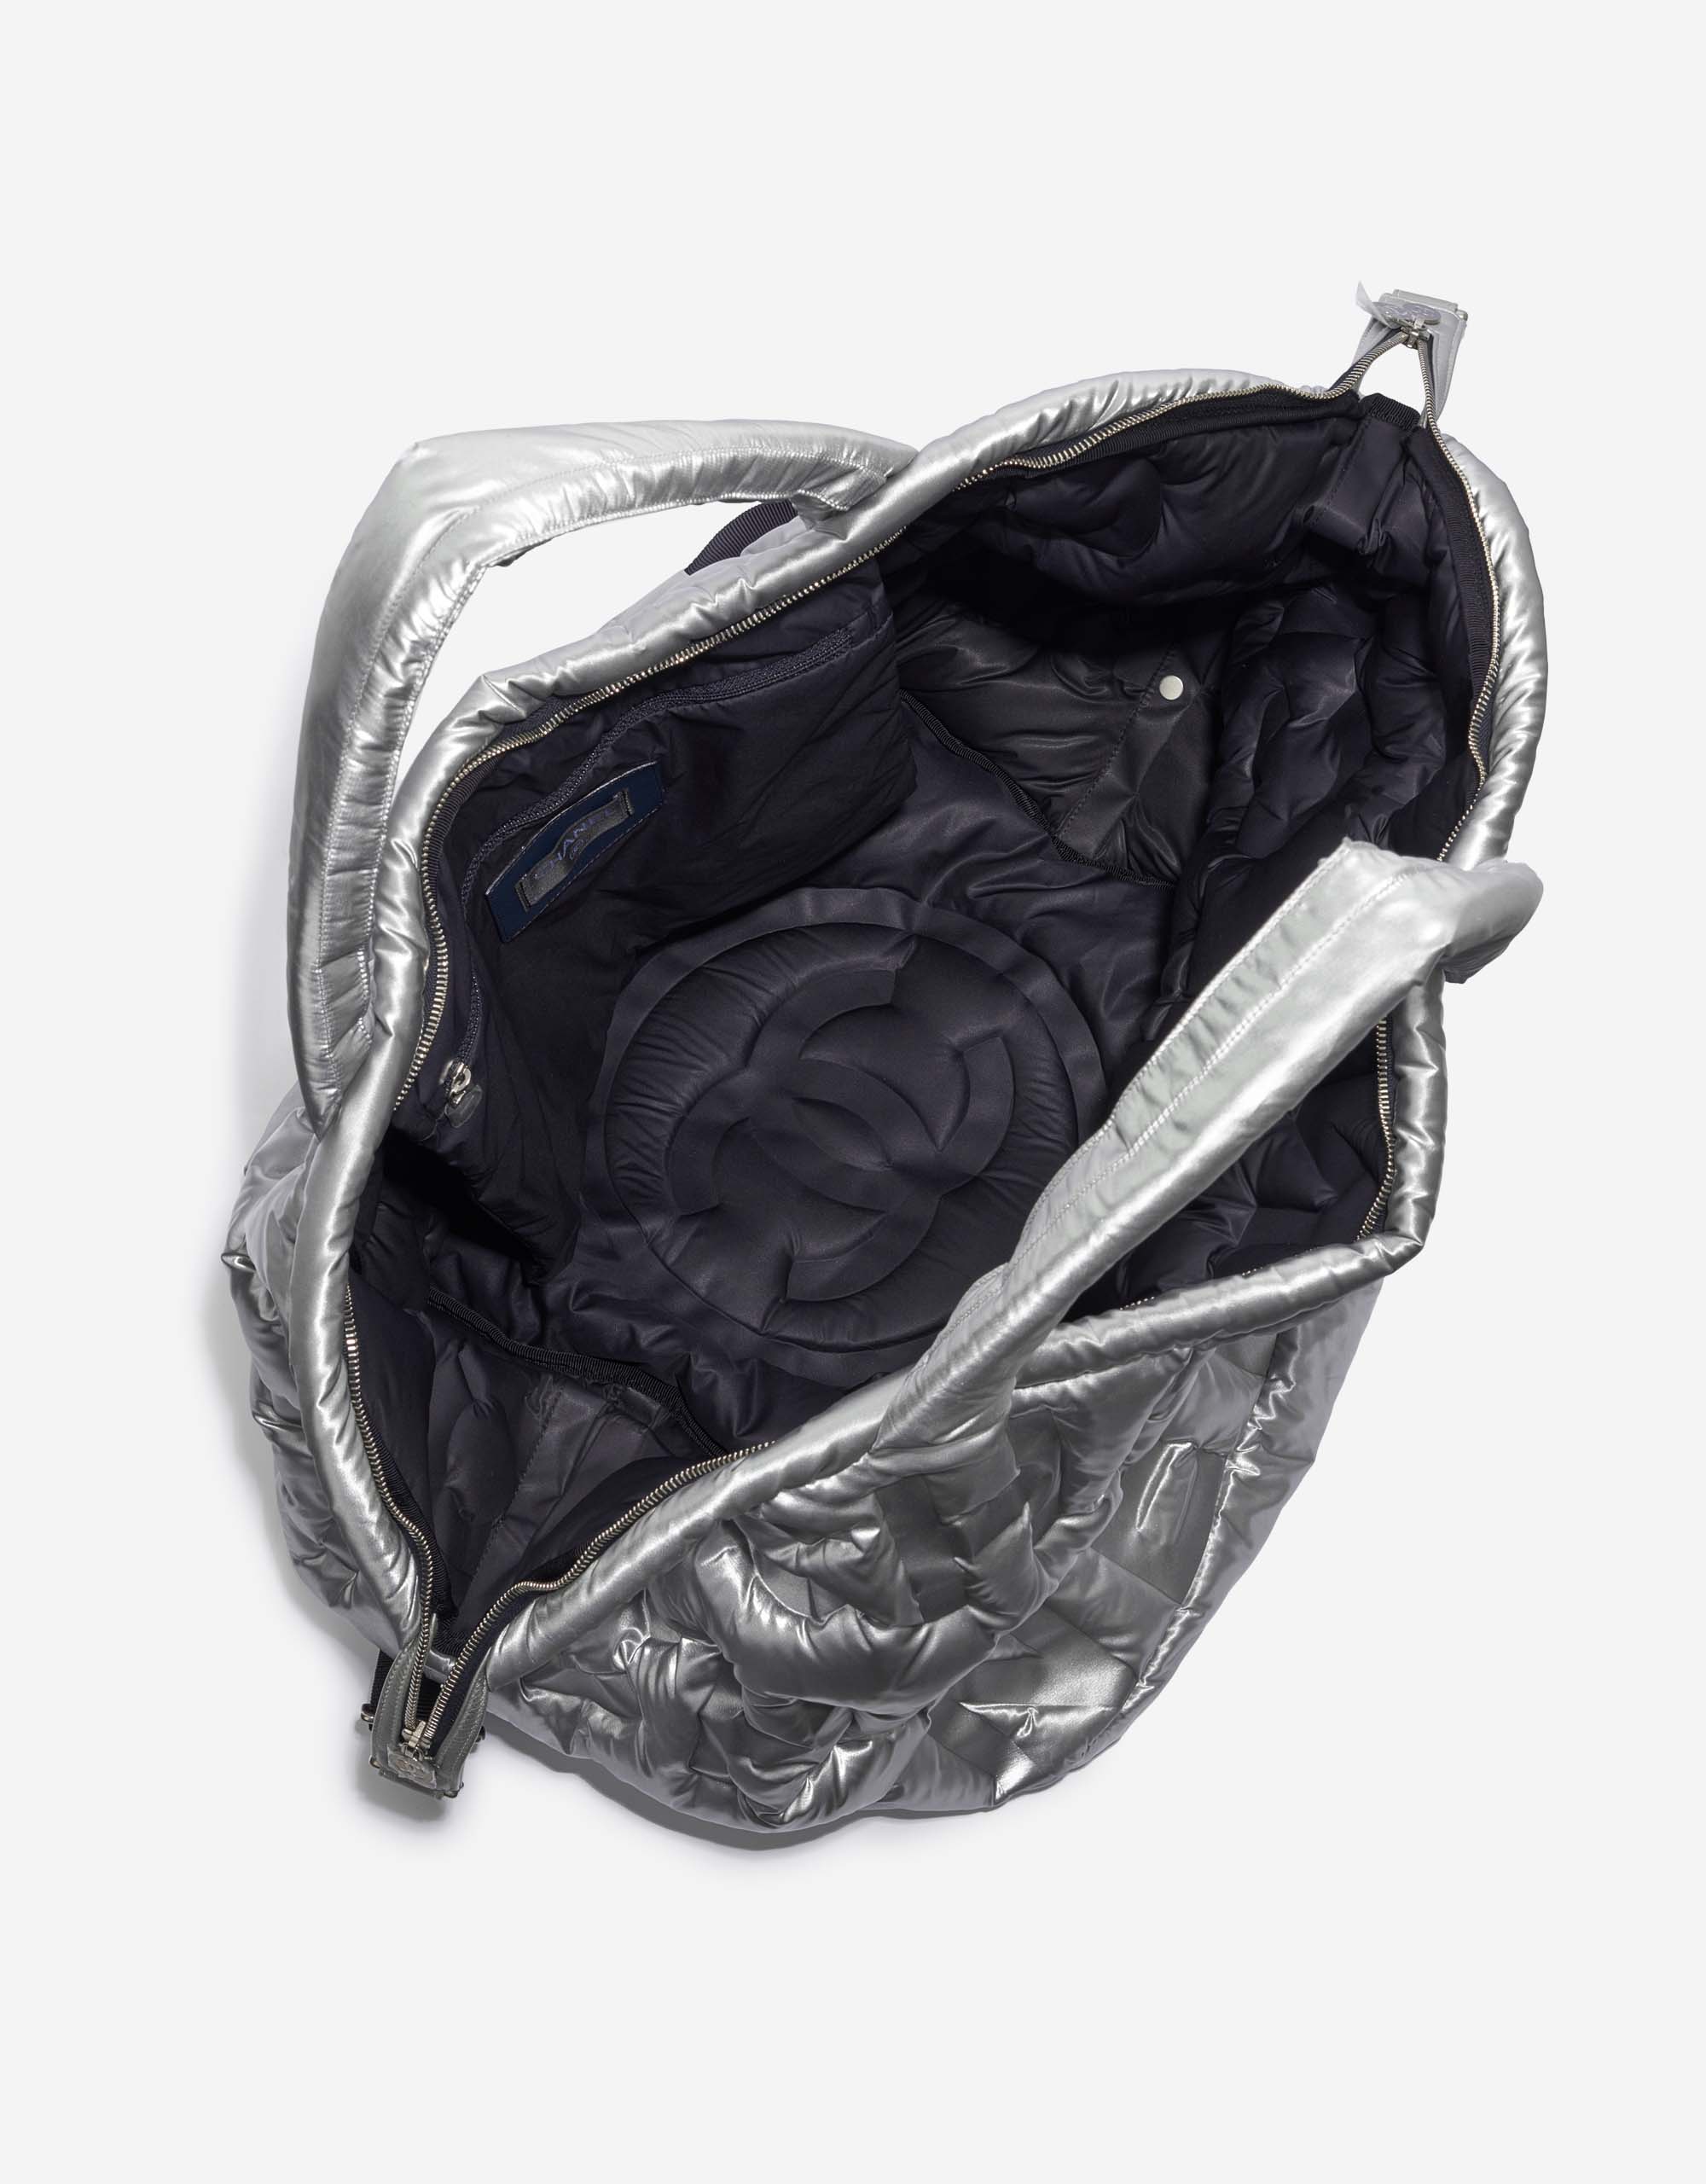 Chanel ShoppingTote Silver Inside | Verkaufen Sie Ihre Designertasche auf Saclab.com